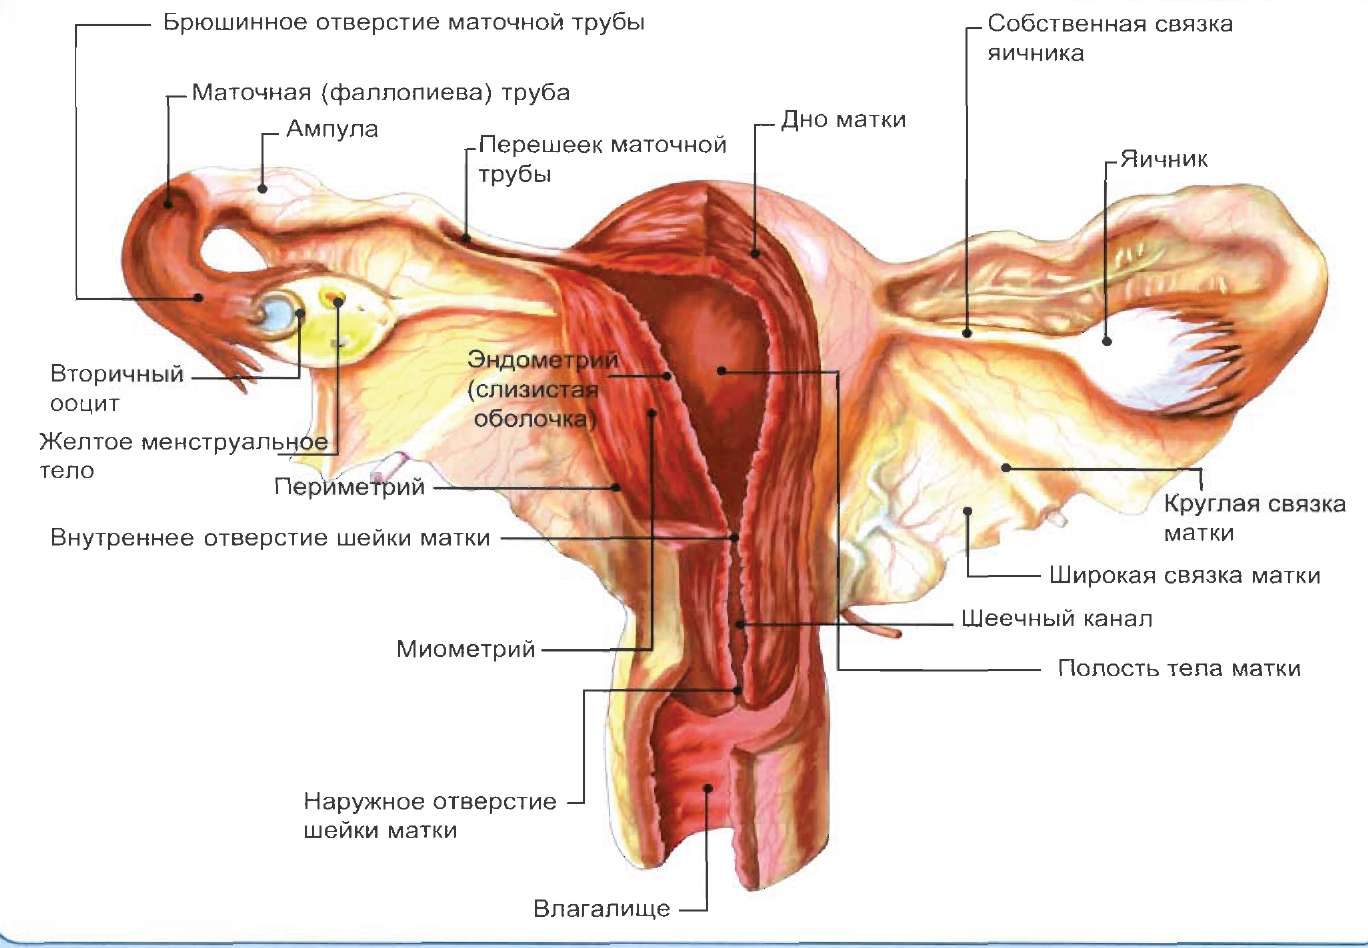 Женская половая труба. Строение матки с придатками. Внутреннее Анатомическое отверстие матки. Маточная труба внутреннее строение. Строение матки и придатков анатомия.